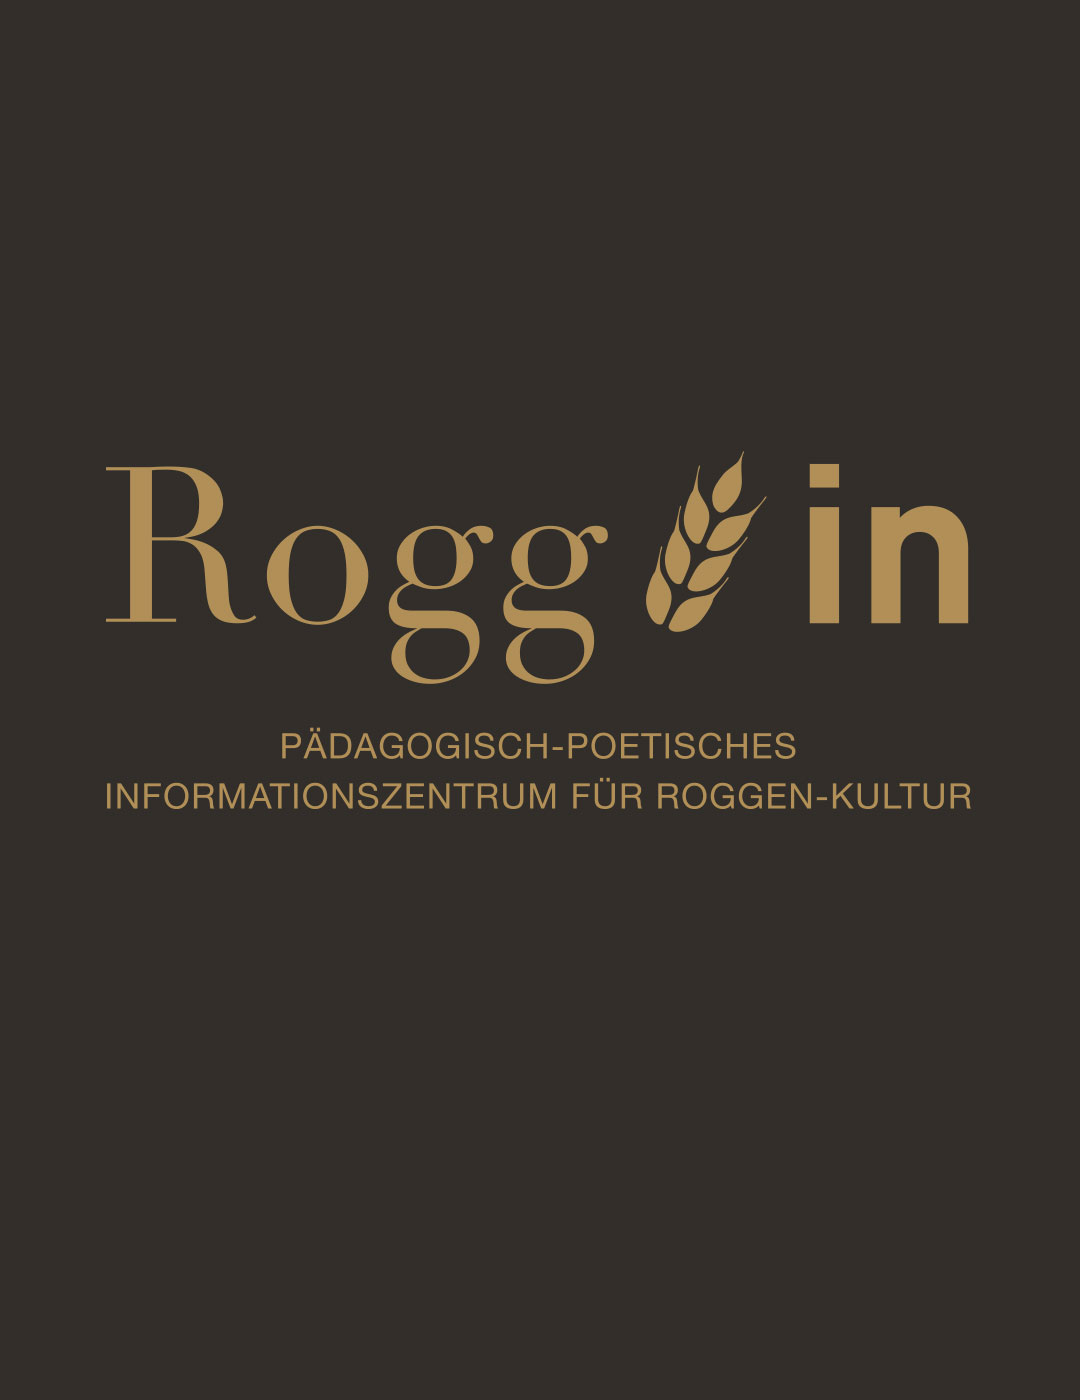 toc. designstudio  - Rogg-in Informationszentrum - Ausstellungs Konzept, Szenografie,  Innenarchitektur, Raumgrafik, Kommunikationsdesign, Multimedia, Web